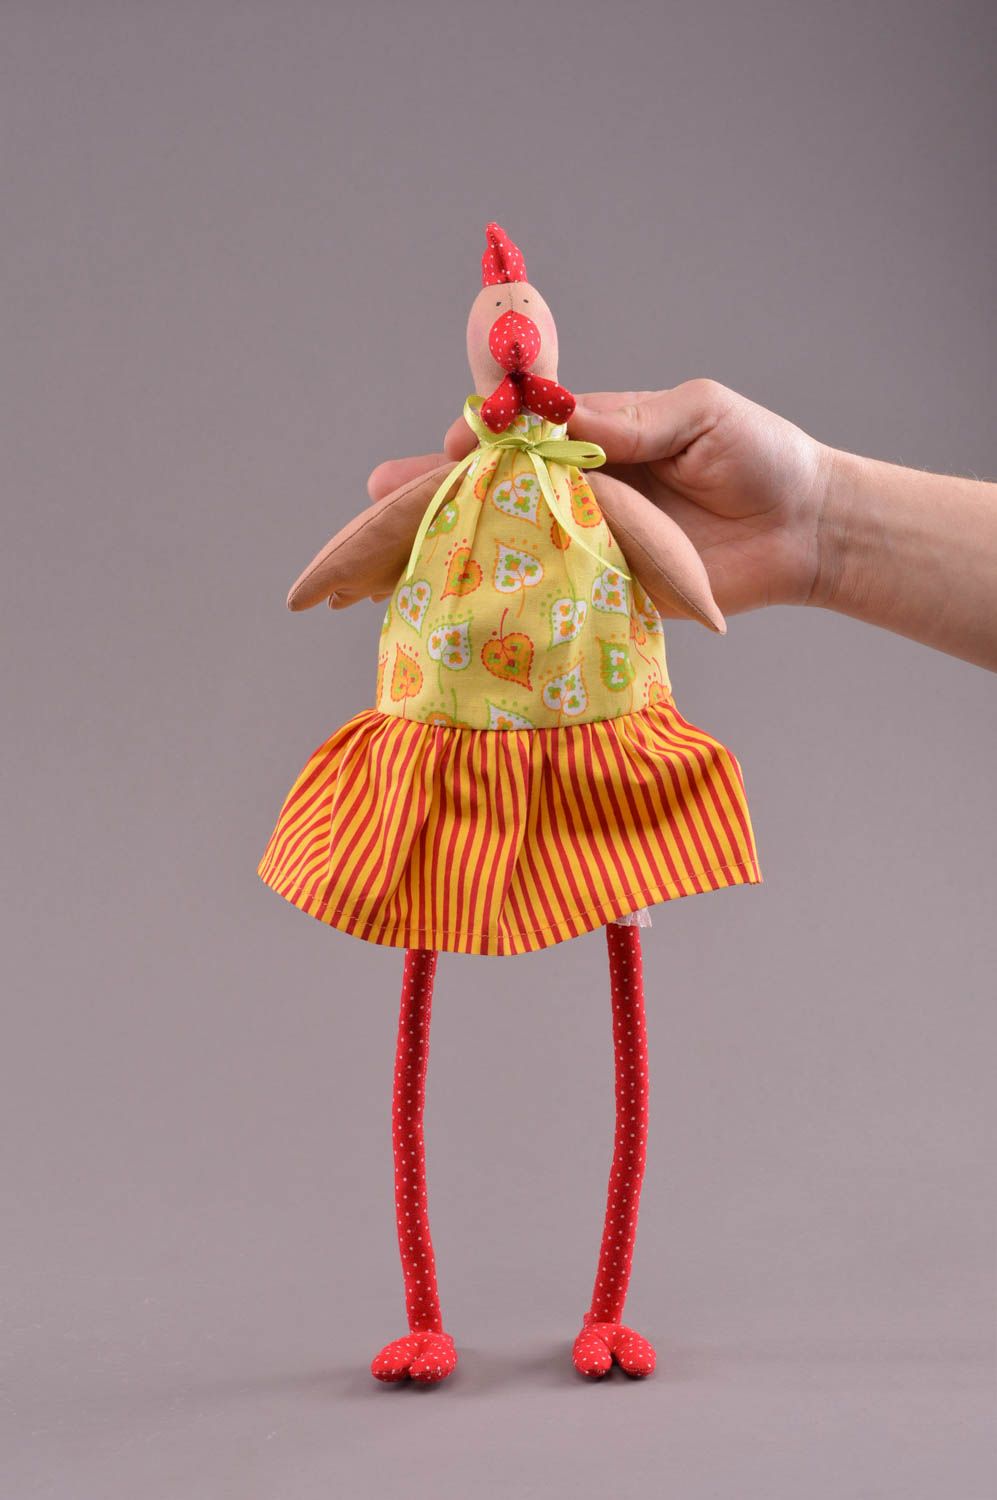 Textil Kuscheltier Huhn im gelben Kleid weich bunt handmade Spielzeug für Kinder foto 4